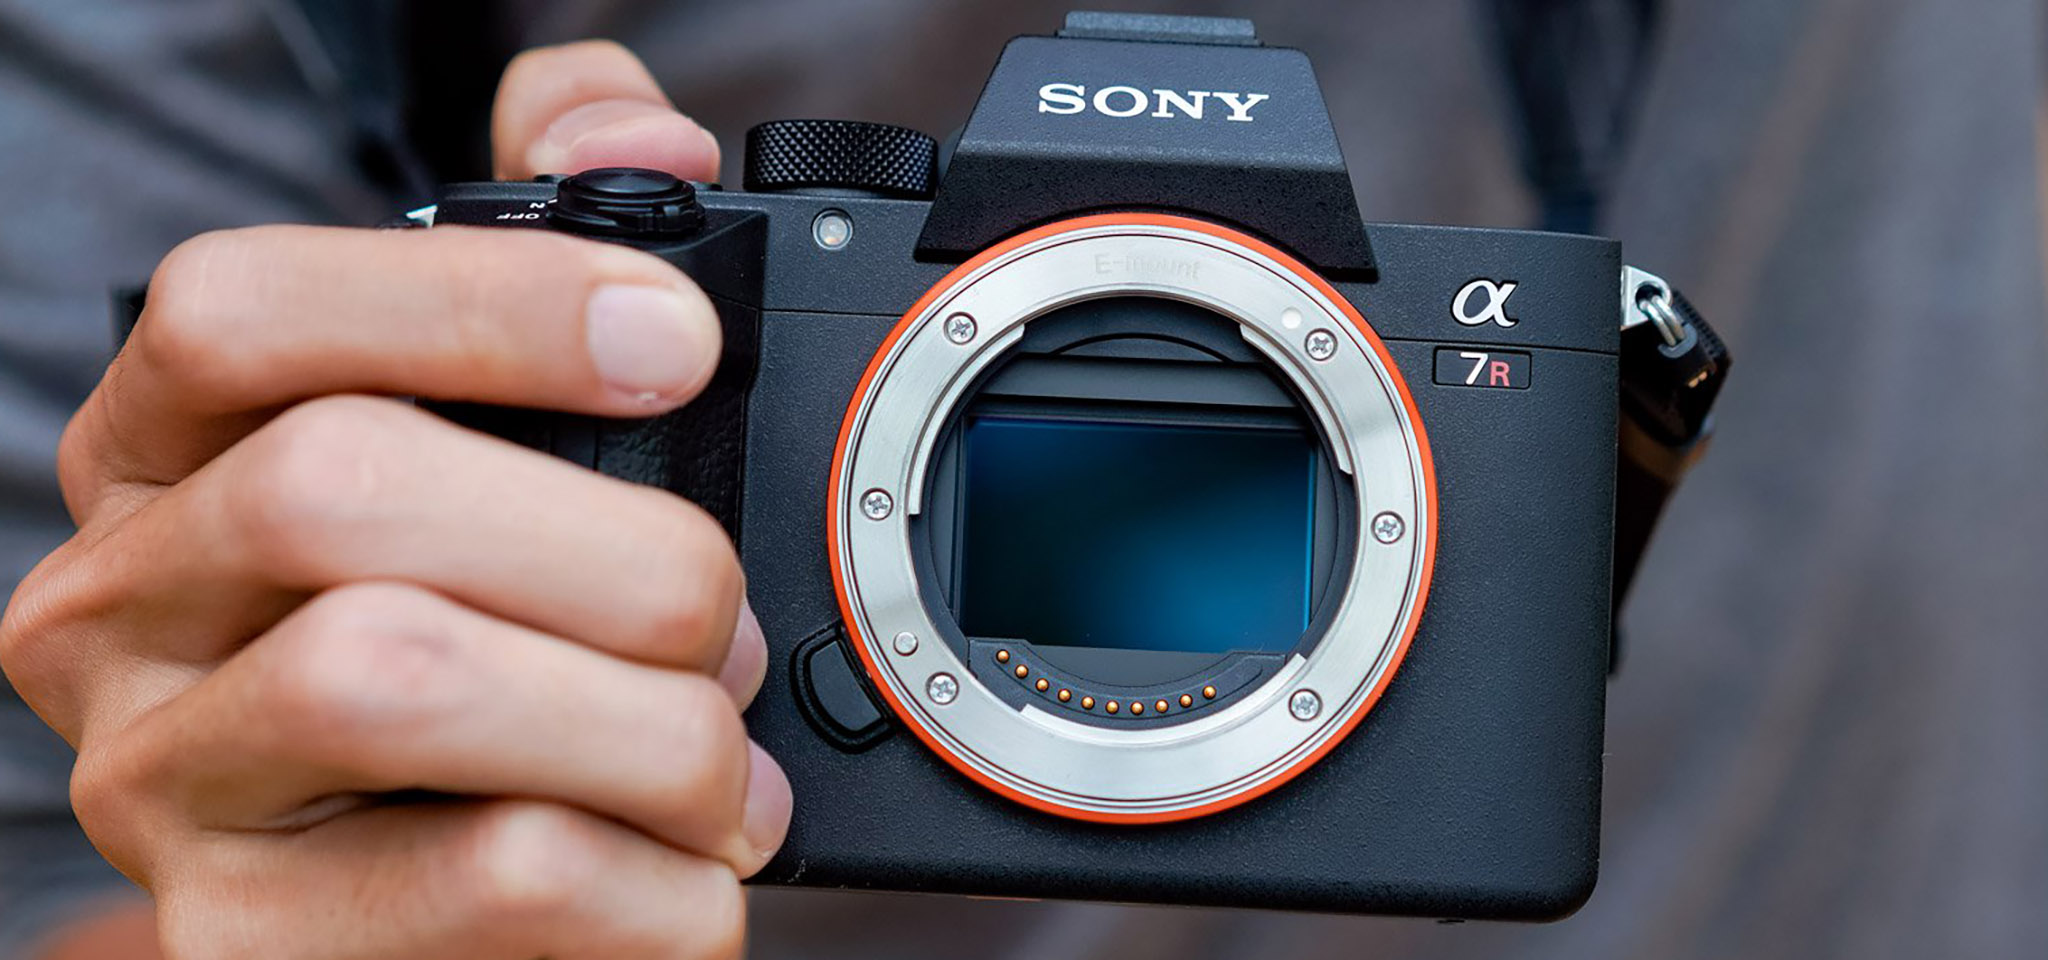 [DxOMark] Cảm biến của Sony A7r III đạt 100 điểm, ngang ngửa Nikon D850